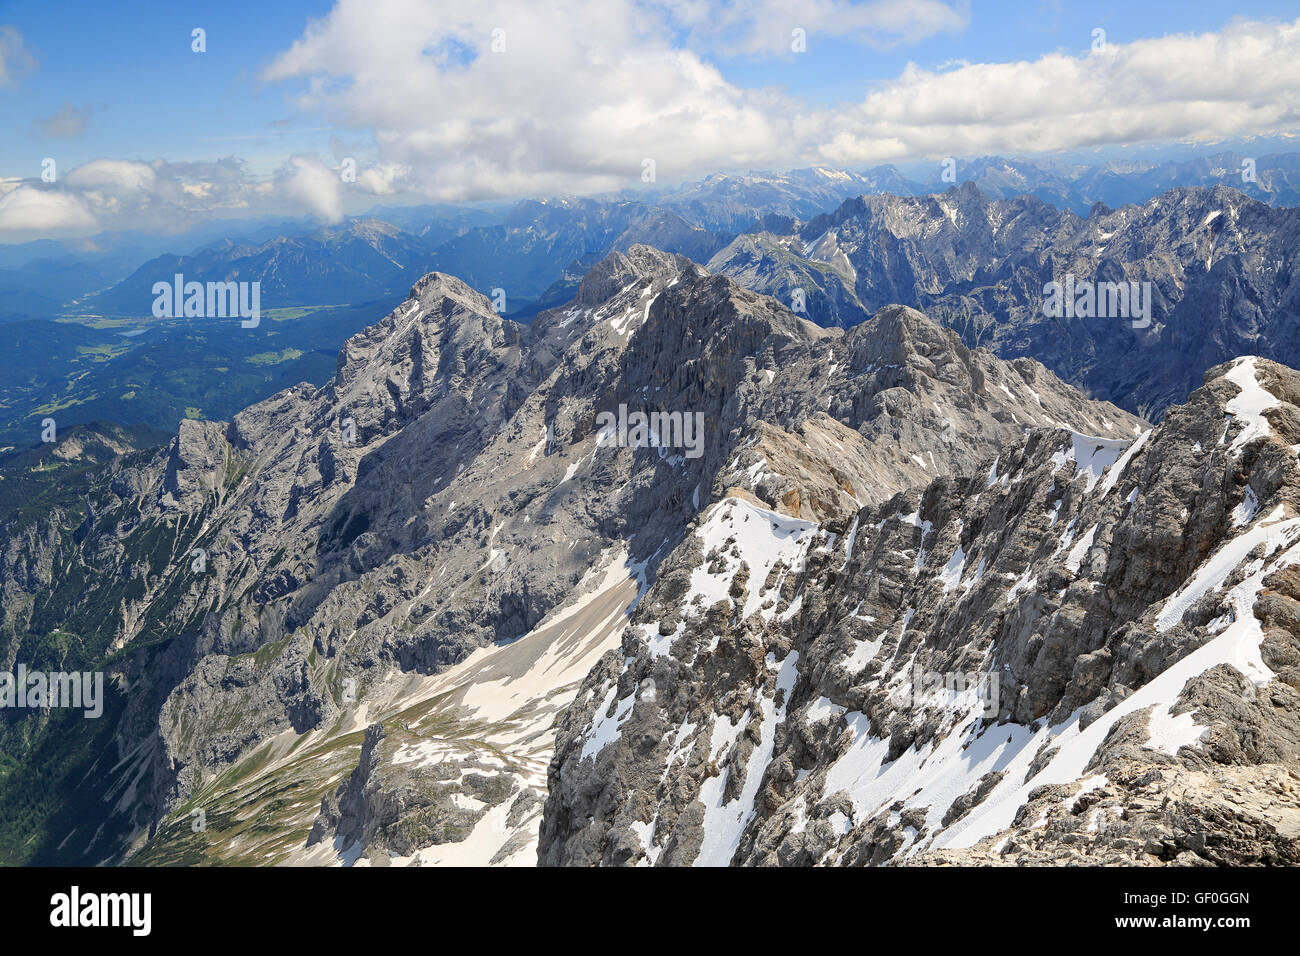 Alpes vue depuis le sommet de Zugspitze, l'Allemagne. La Zugspitze, à 2 962 m au-dessus du niveau de la mer. Banque D'Images